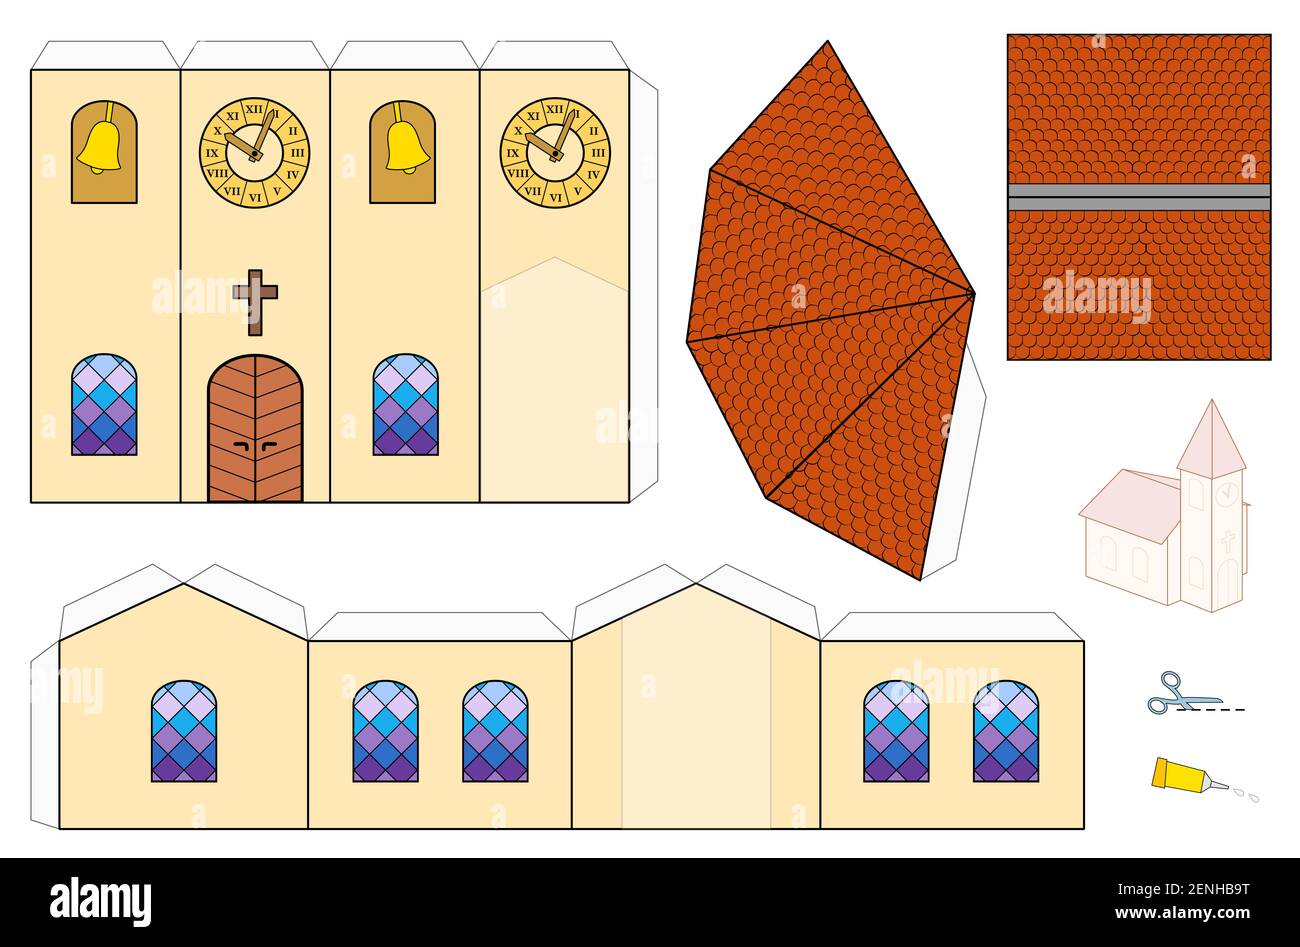 Modello della Chiesa, modello di artigianato della carta. Foglio ritagliato per la realizzazione di una semplice chiesa modello in scala 3d con finestre colorate, campanile, orologio a torre e timoni. Foto Stock